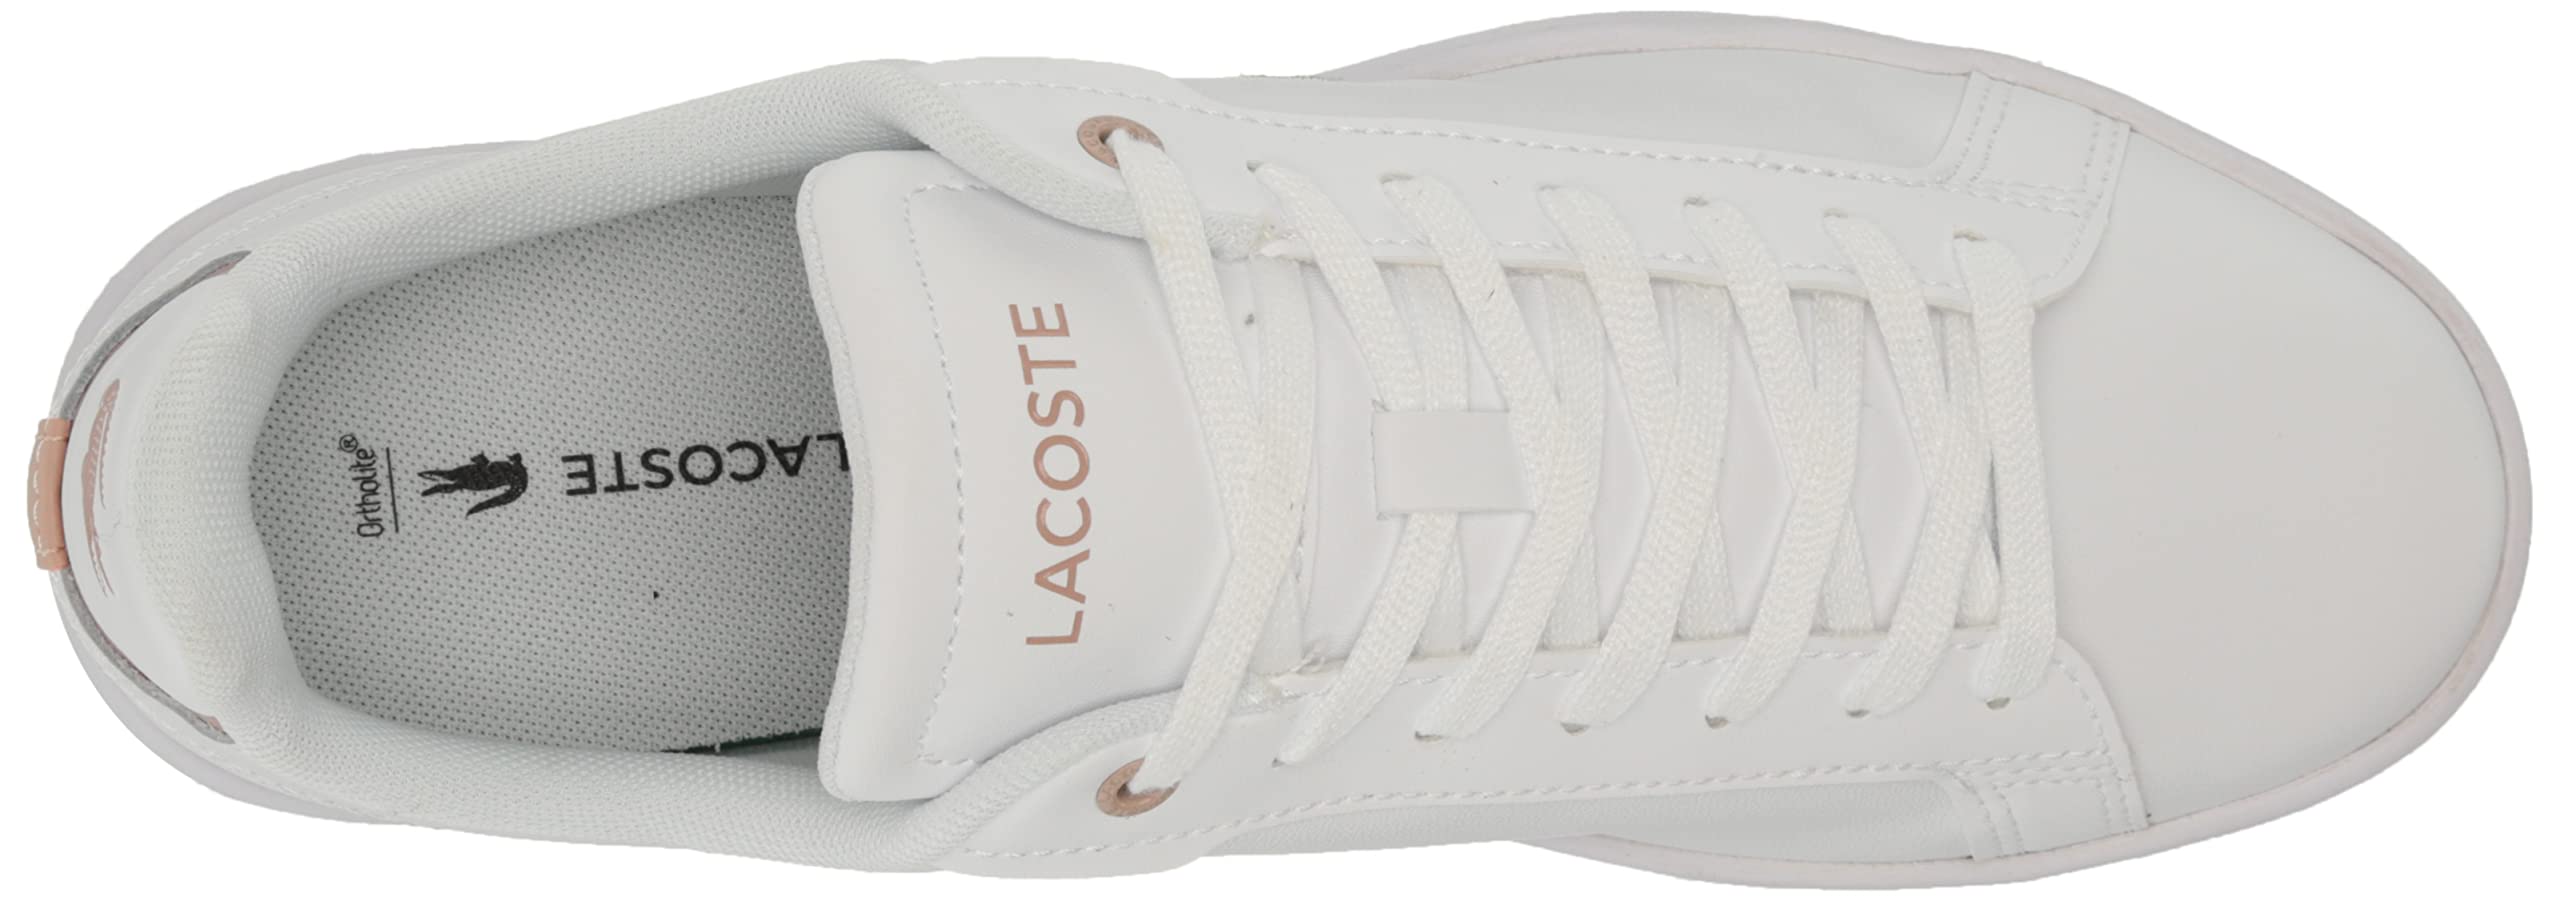 Lacoste Women's Carnaby Sneaker